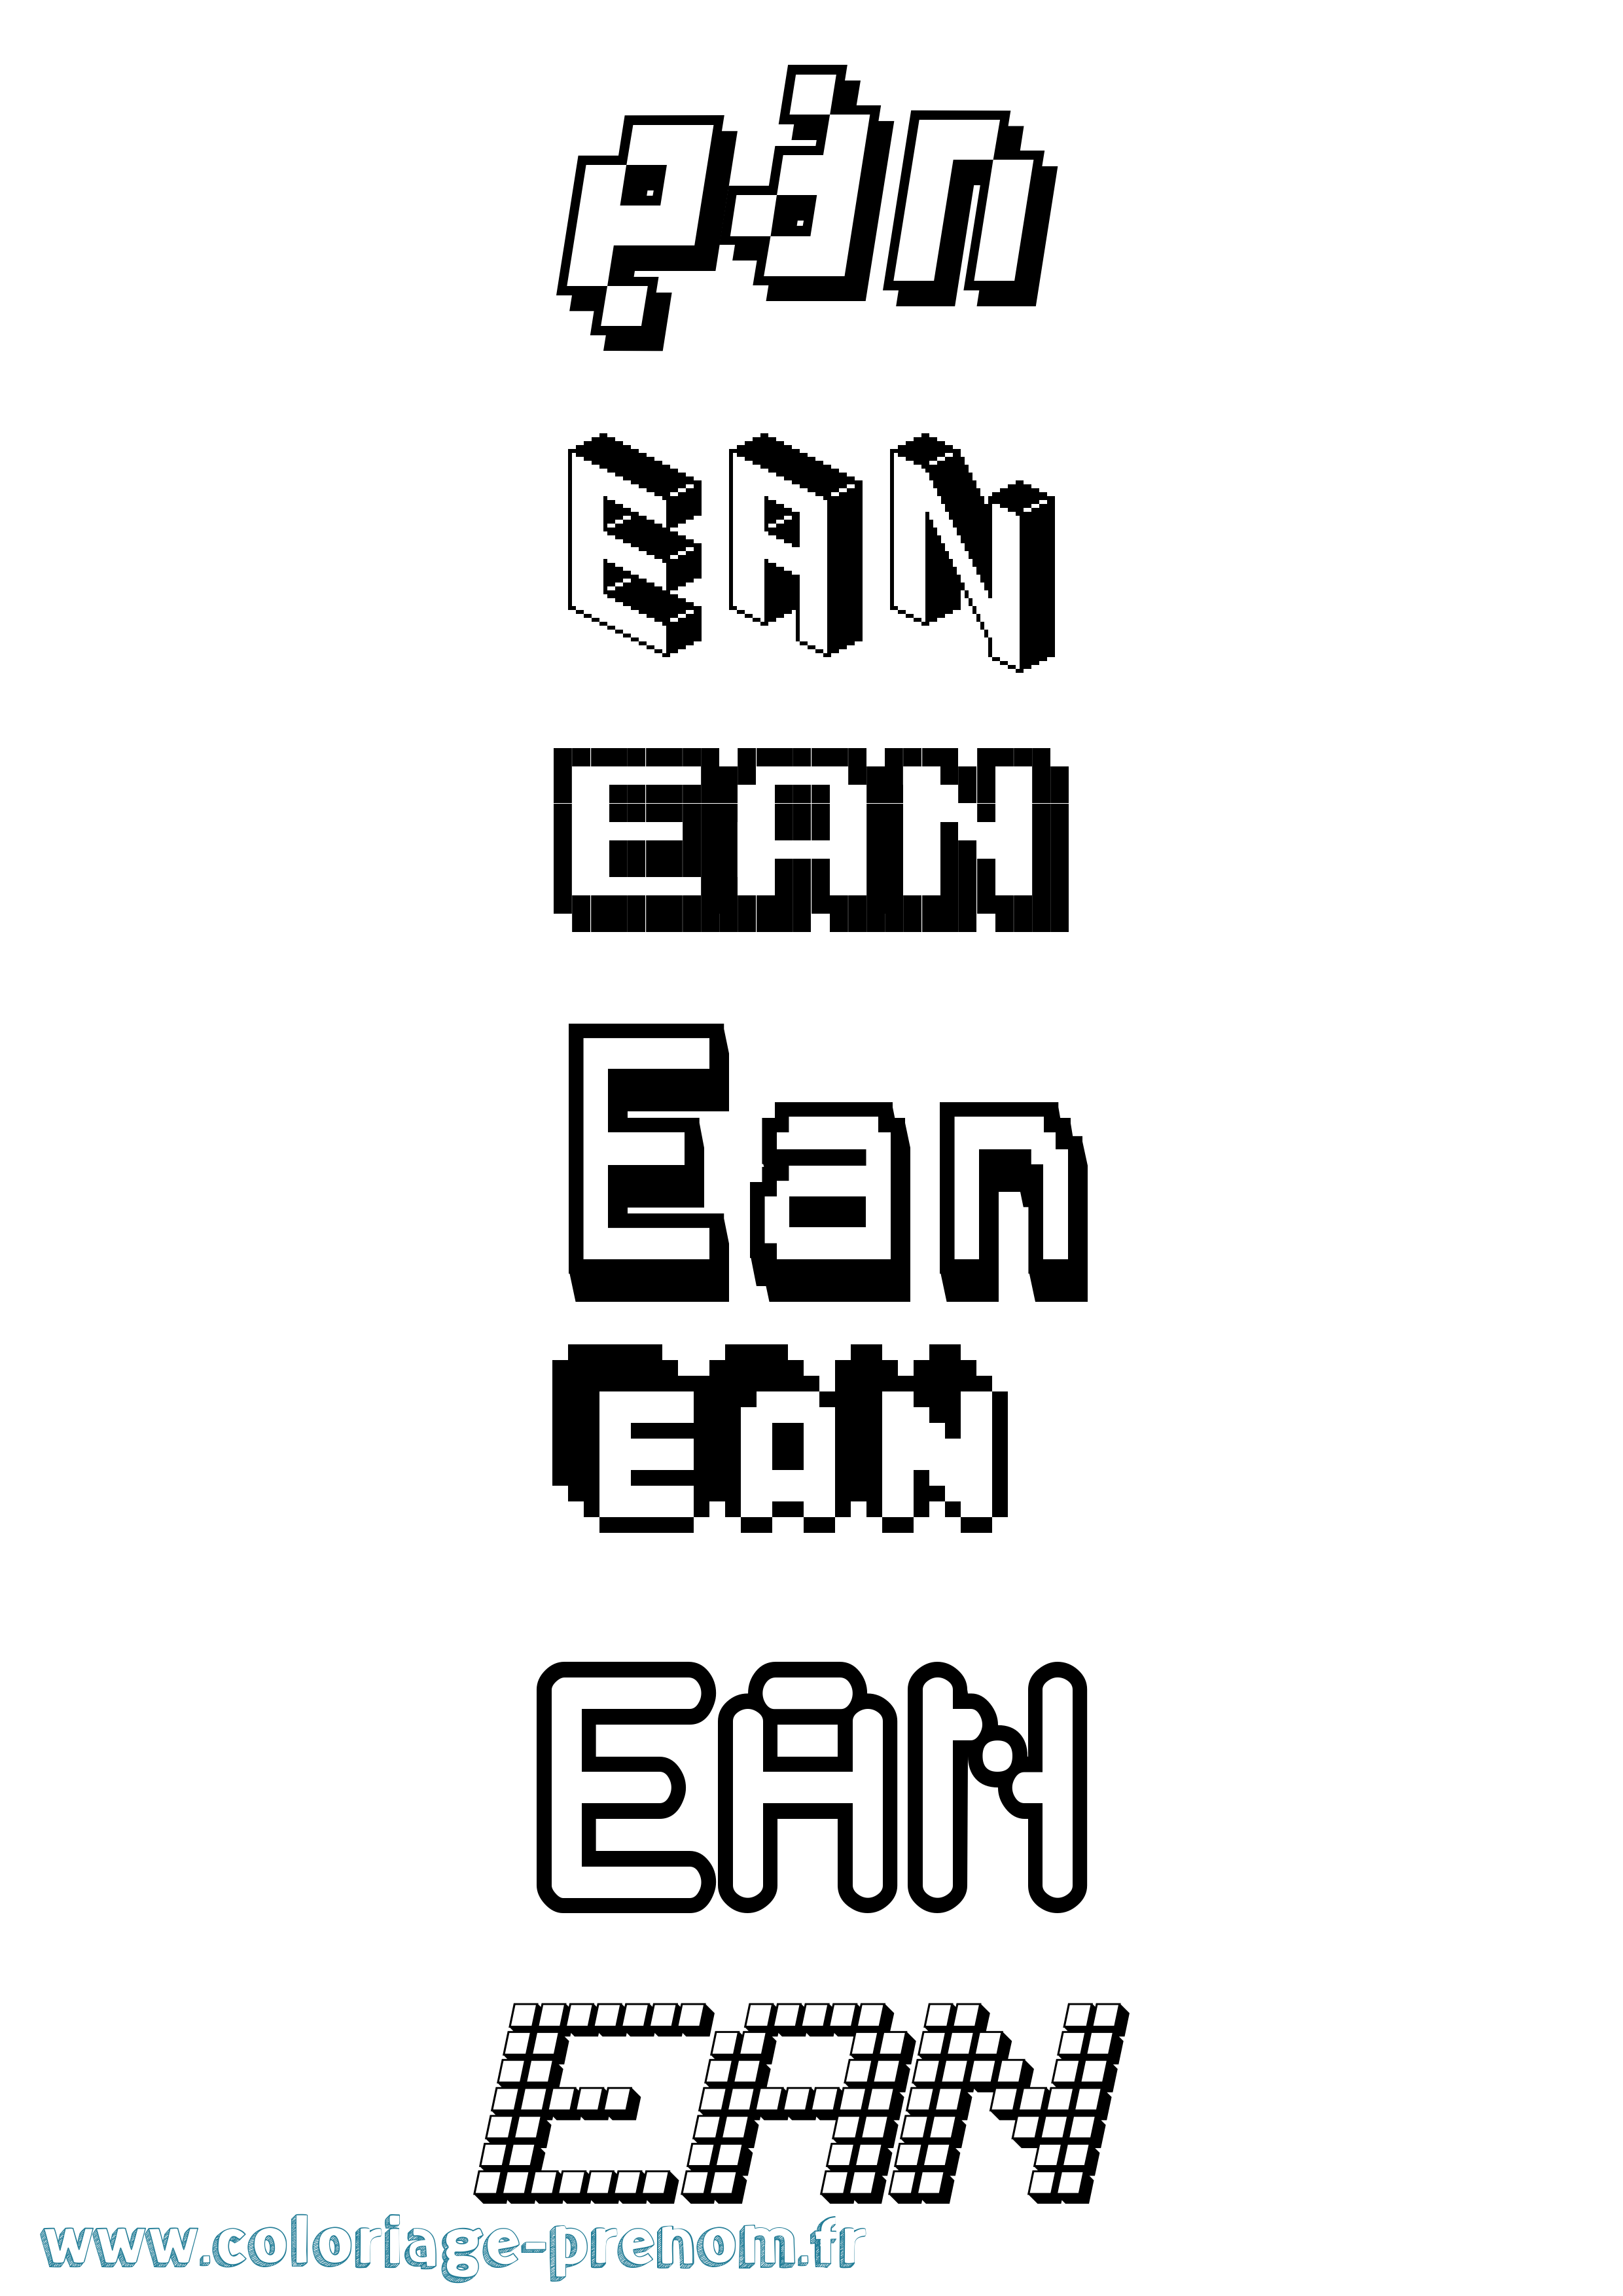 Coloriage prénom Ean Pixel